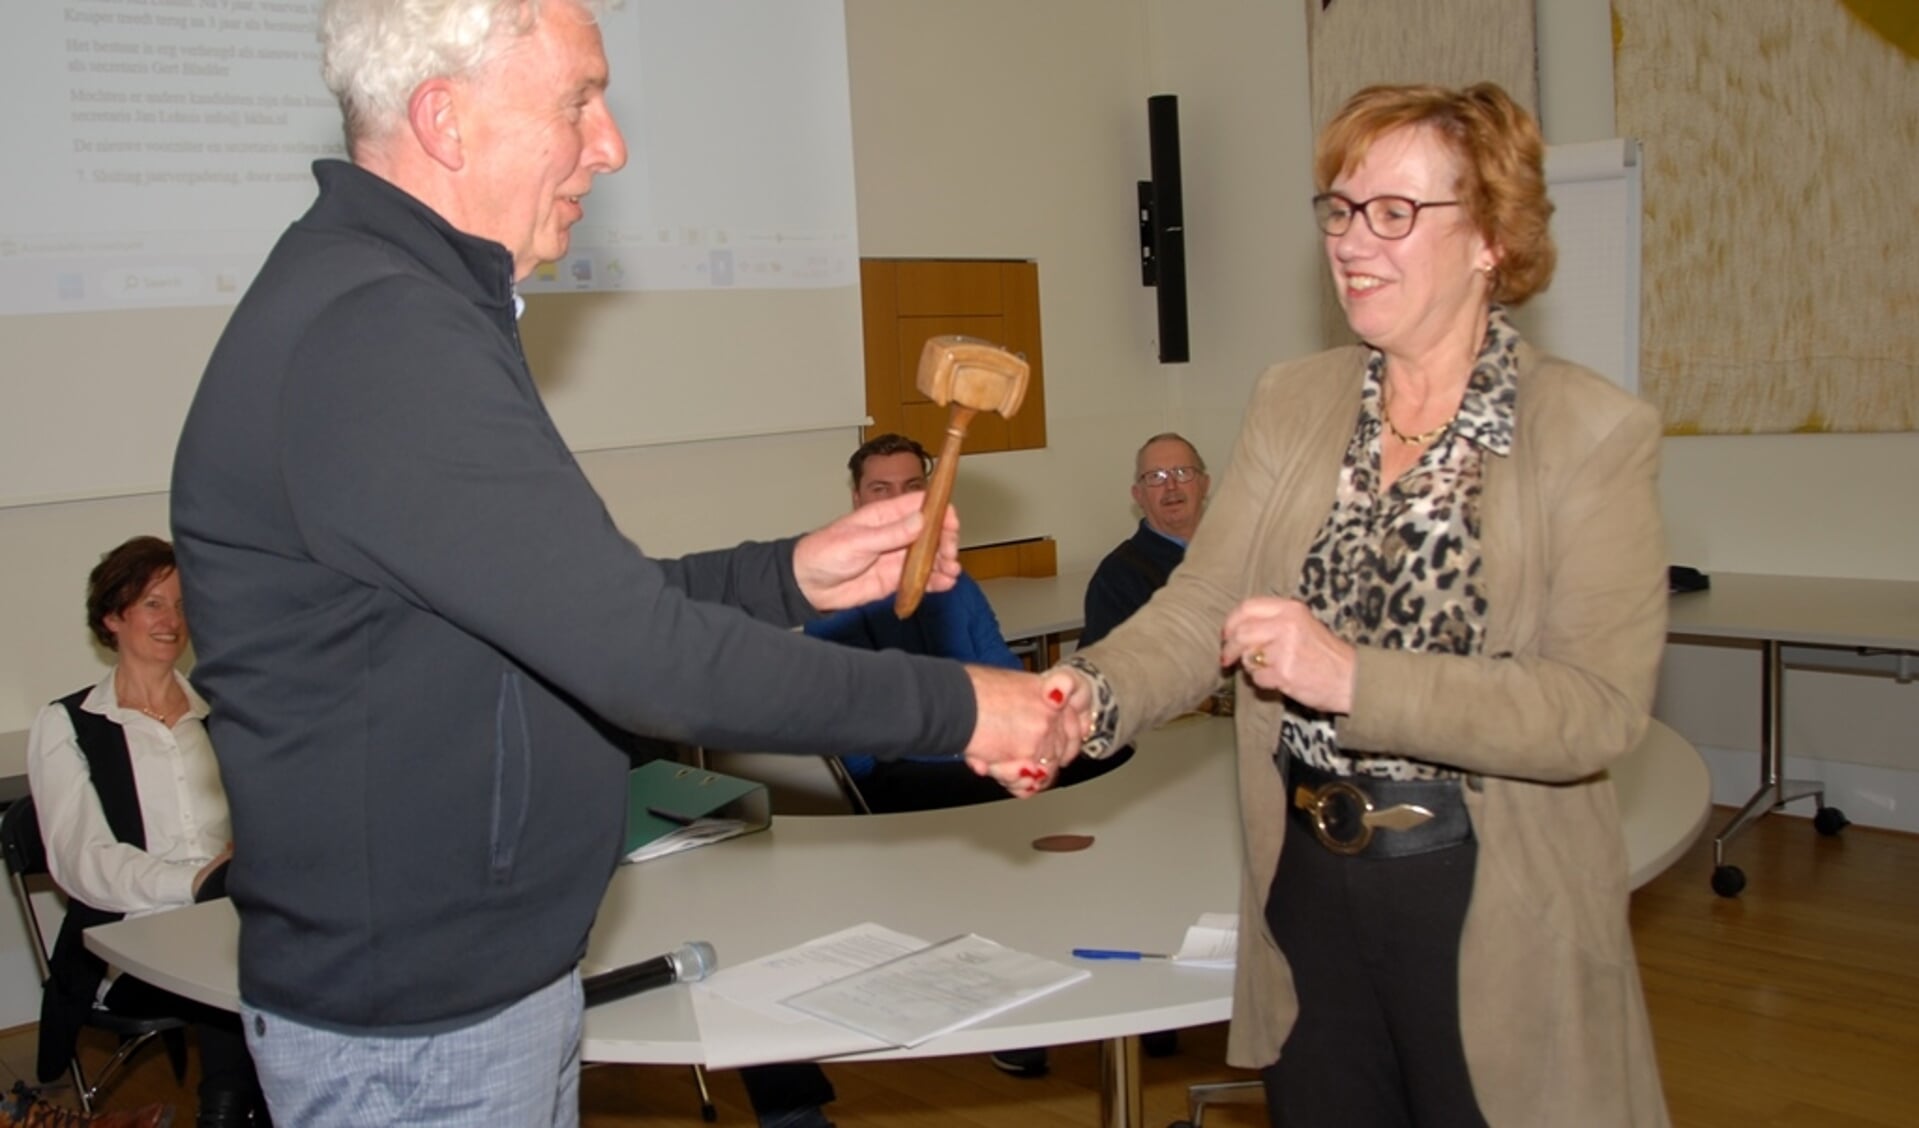 Aftredend voorzitter Eddy Muis overhandigd Anneke Raven de voorzittershamer van de Historische Kring Hellendoorn-Nijverdal. (Foto: Hepa)